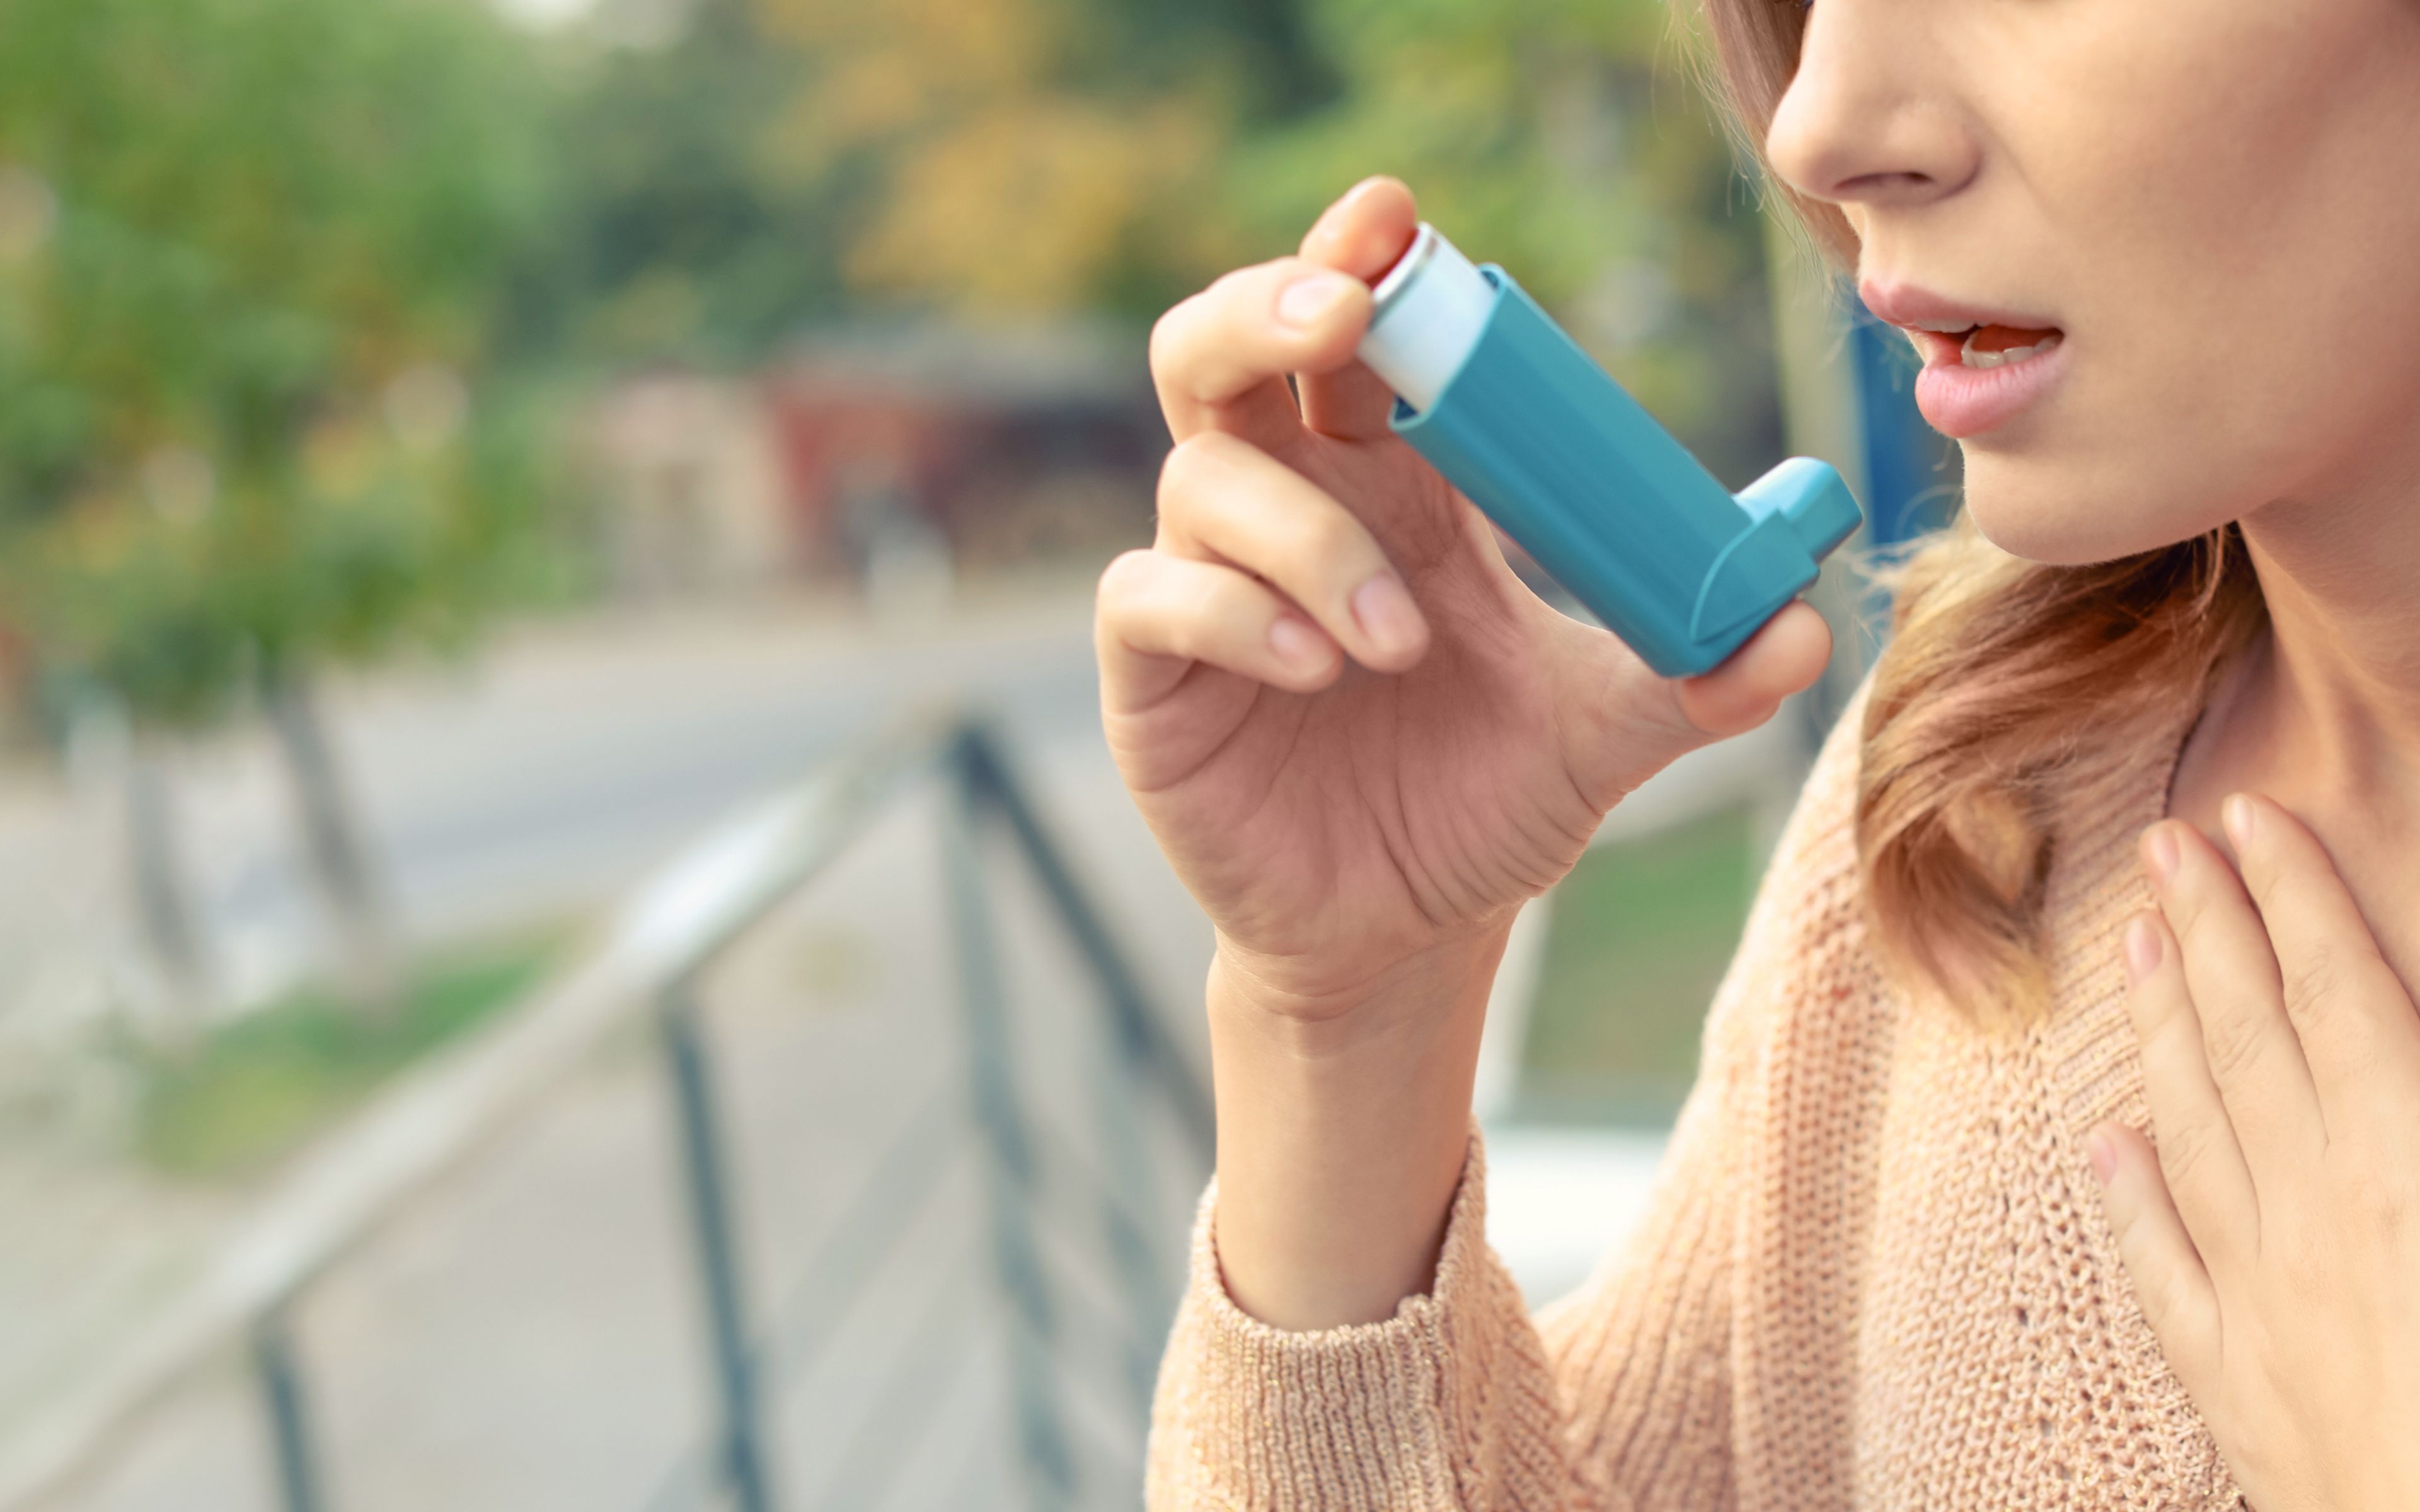 Asthma Kur